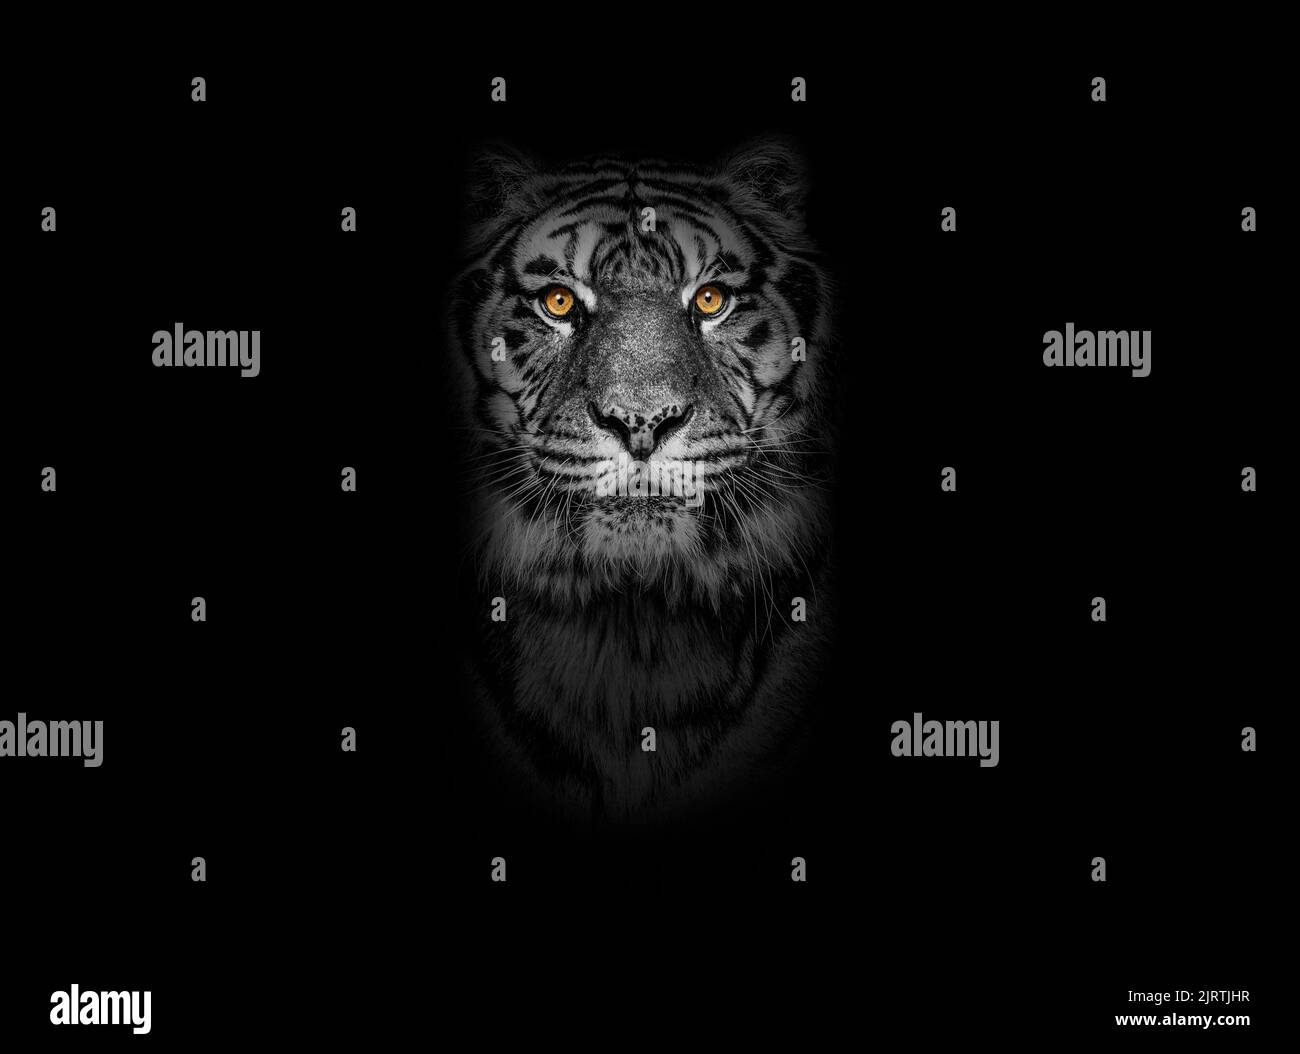 Retrato en blanco y negro de un tigre mirando la cámara sobre fondo negro, ojos amarillos Foto de stock